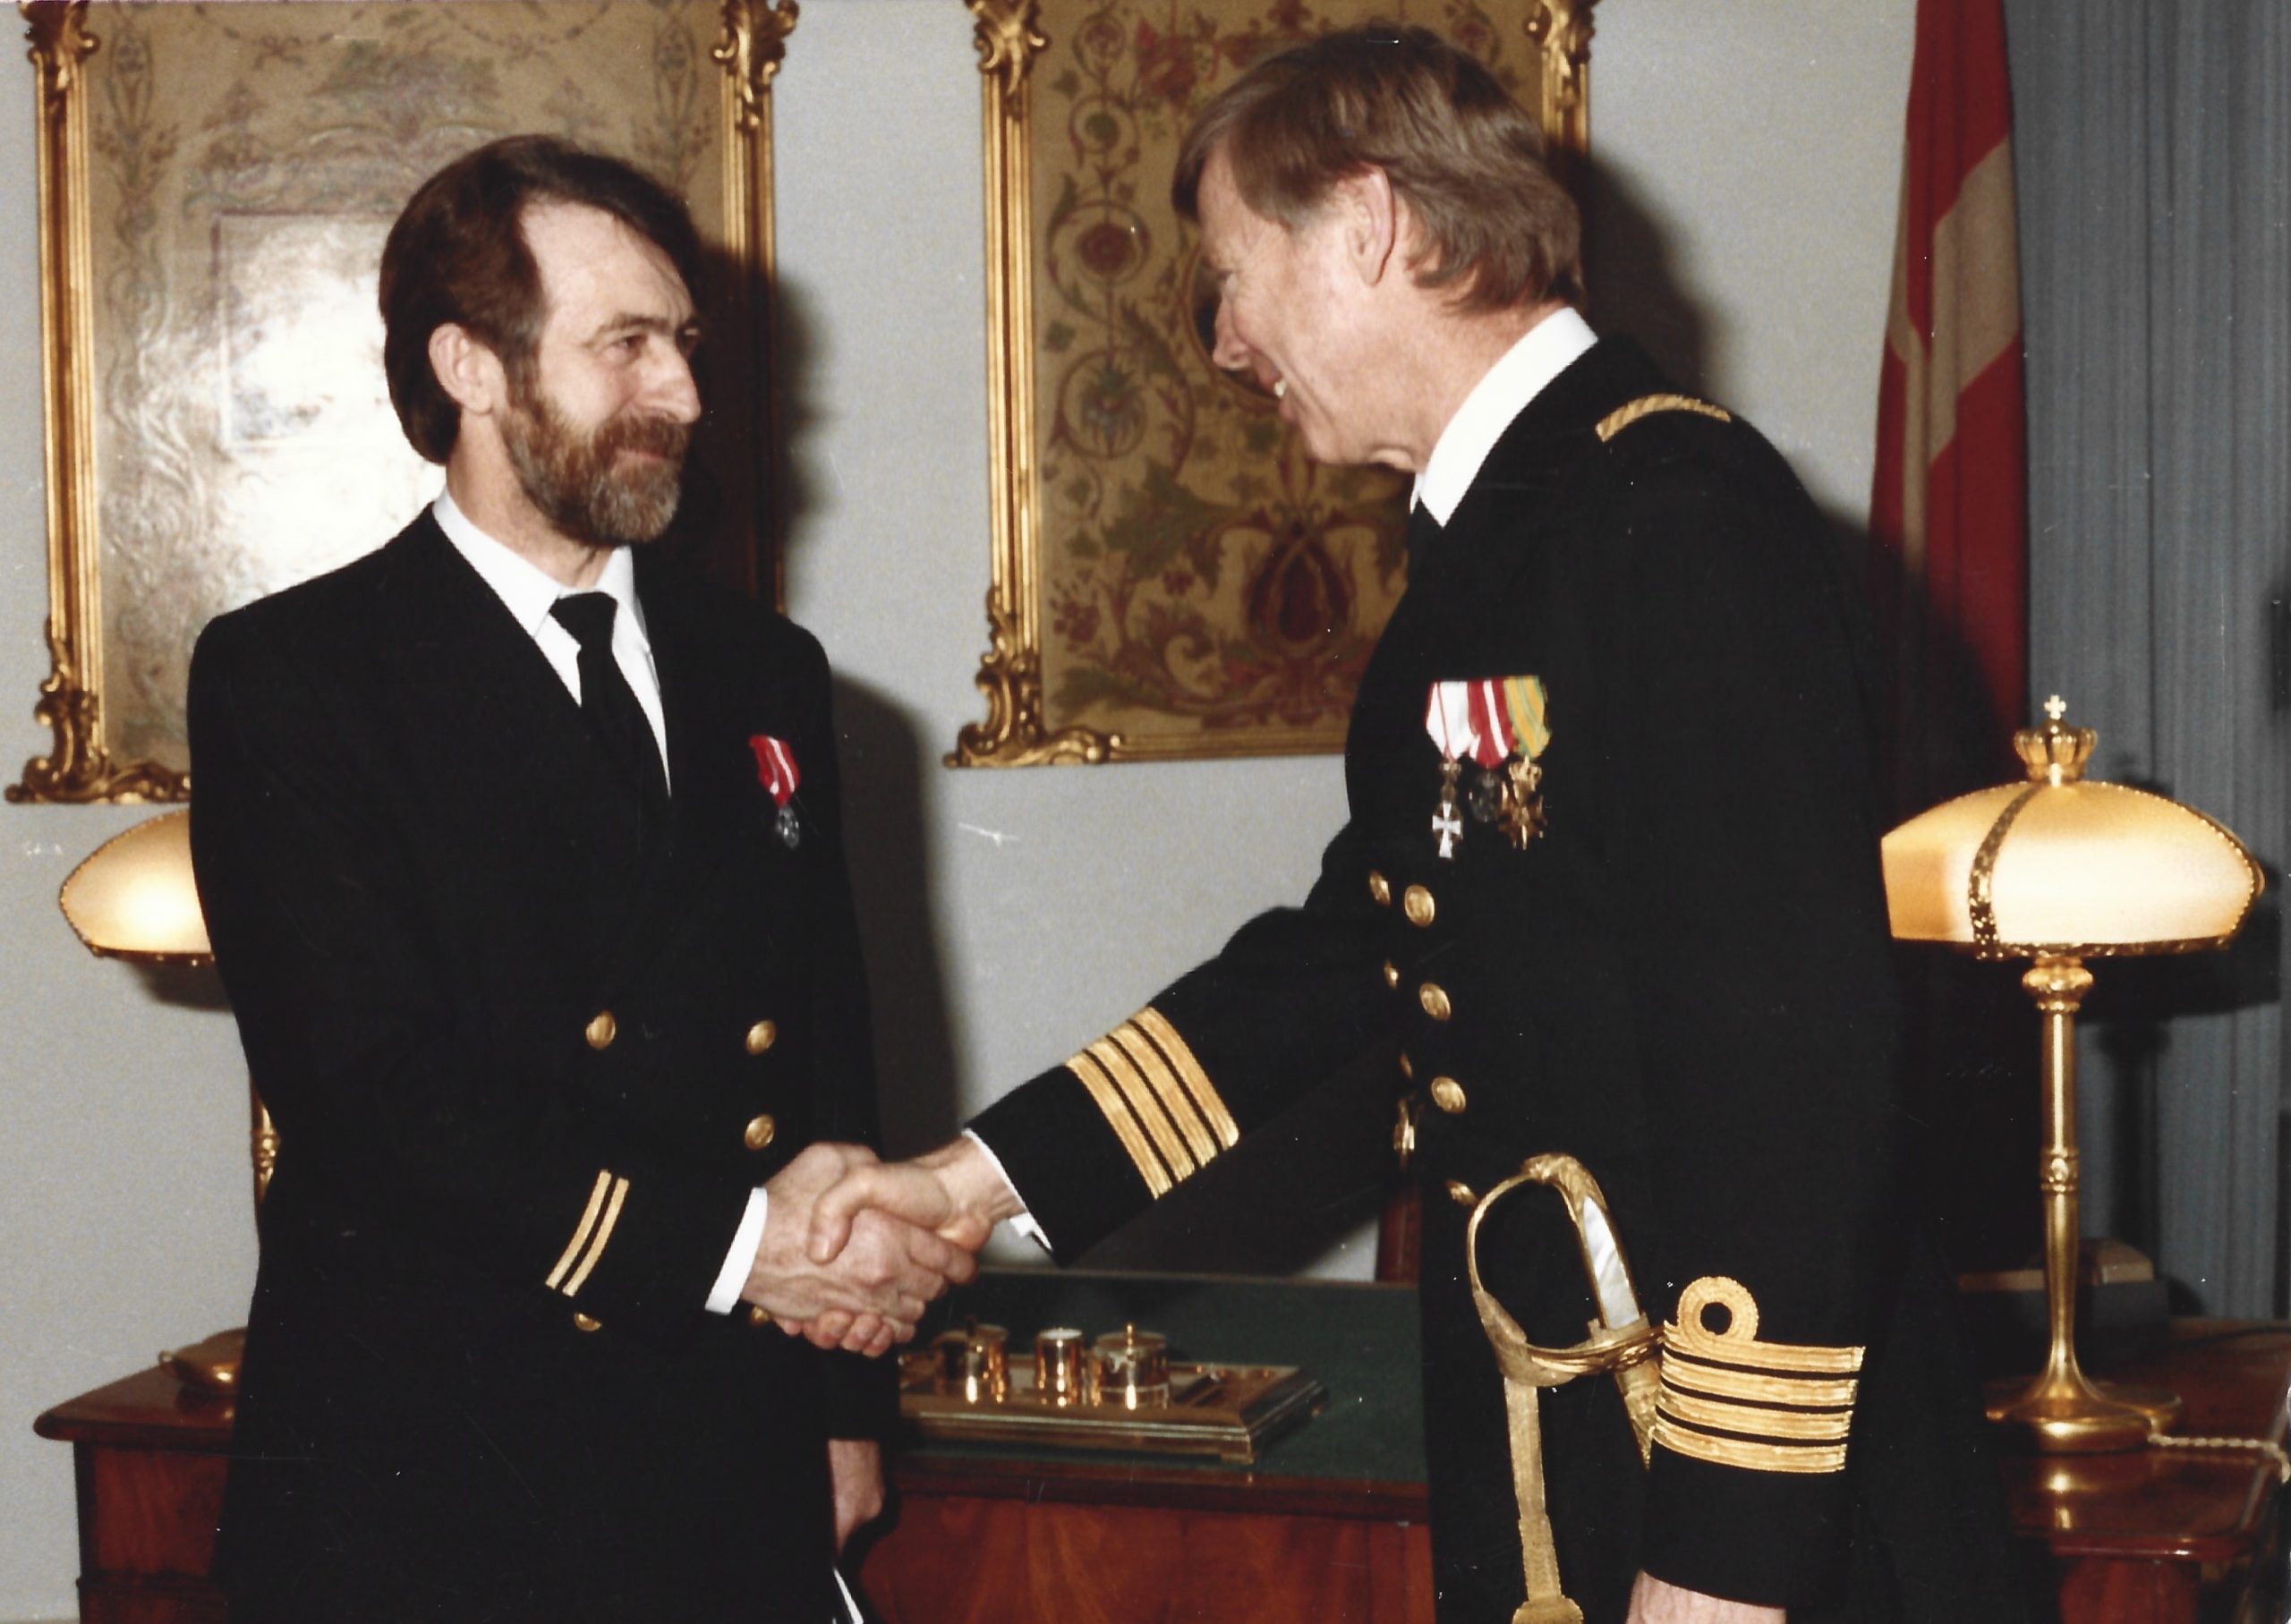 1986 Ole Nielsen ,25 års jubilæum i statens tjeneste 17/04 1986 sammen med (senere) Kontreadmiral Sven Eigil Thiede.